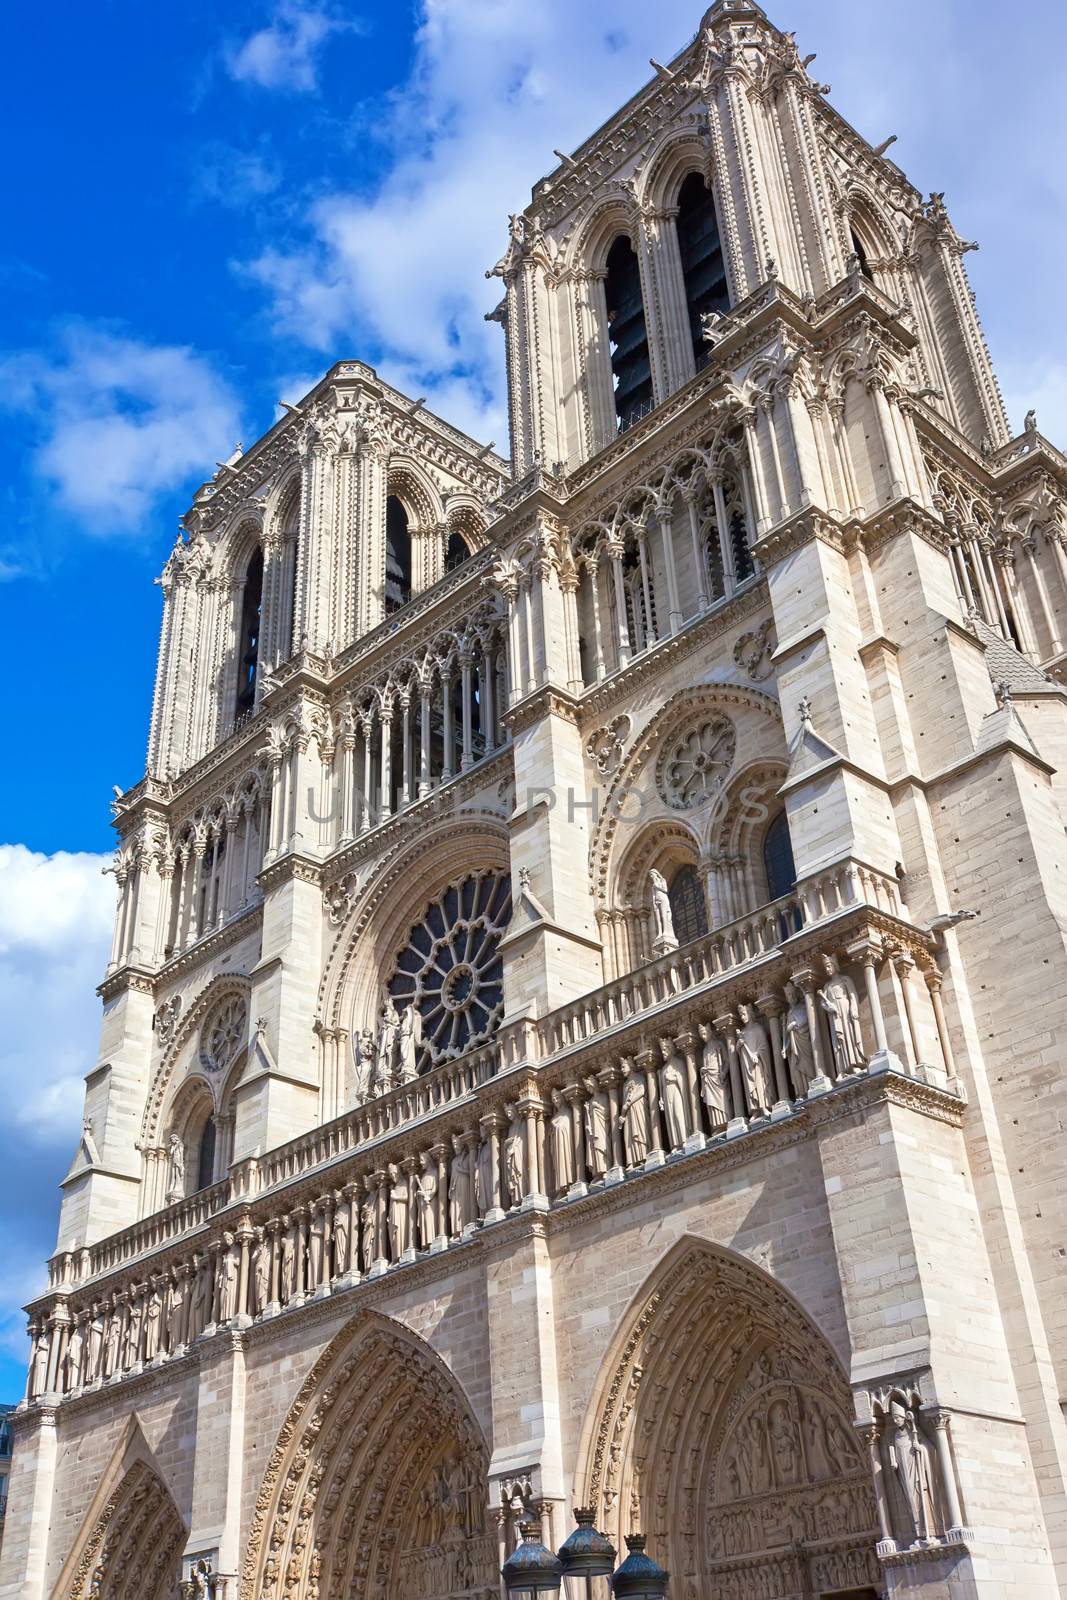 Notre Dame de Paris, famous cathedral in France